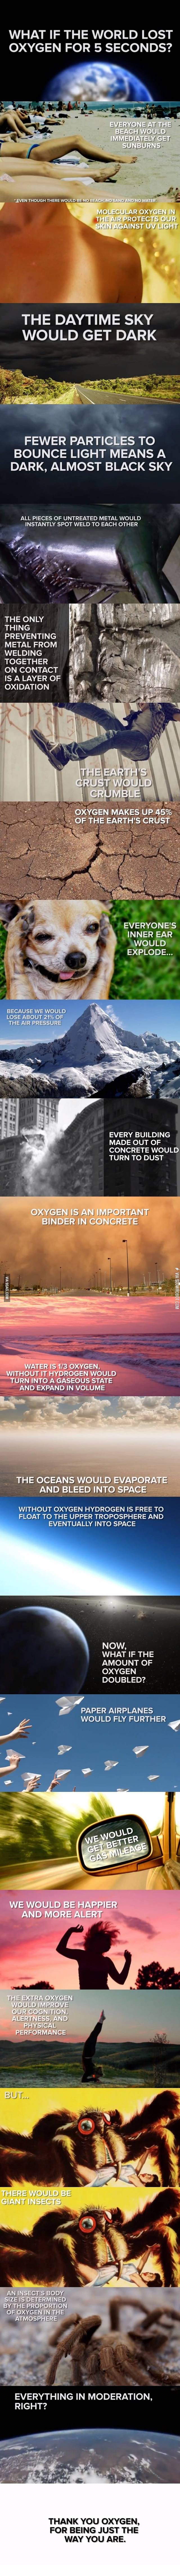 Oxygen.